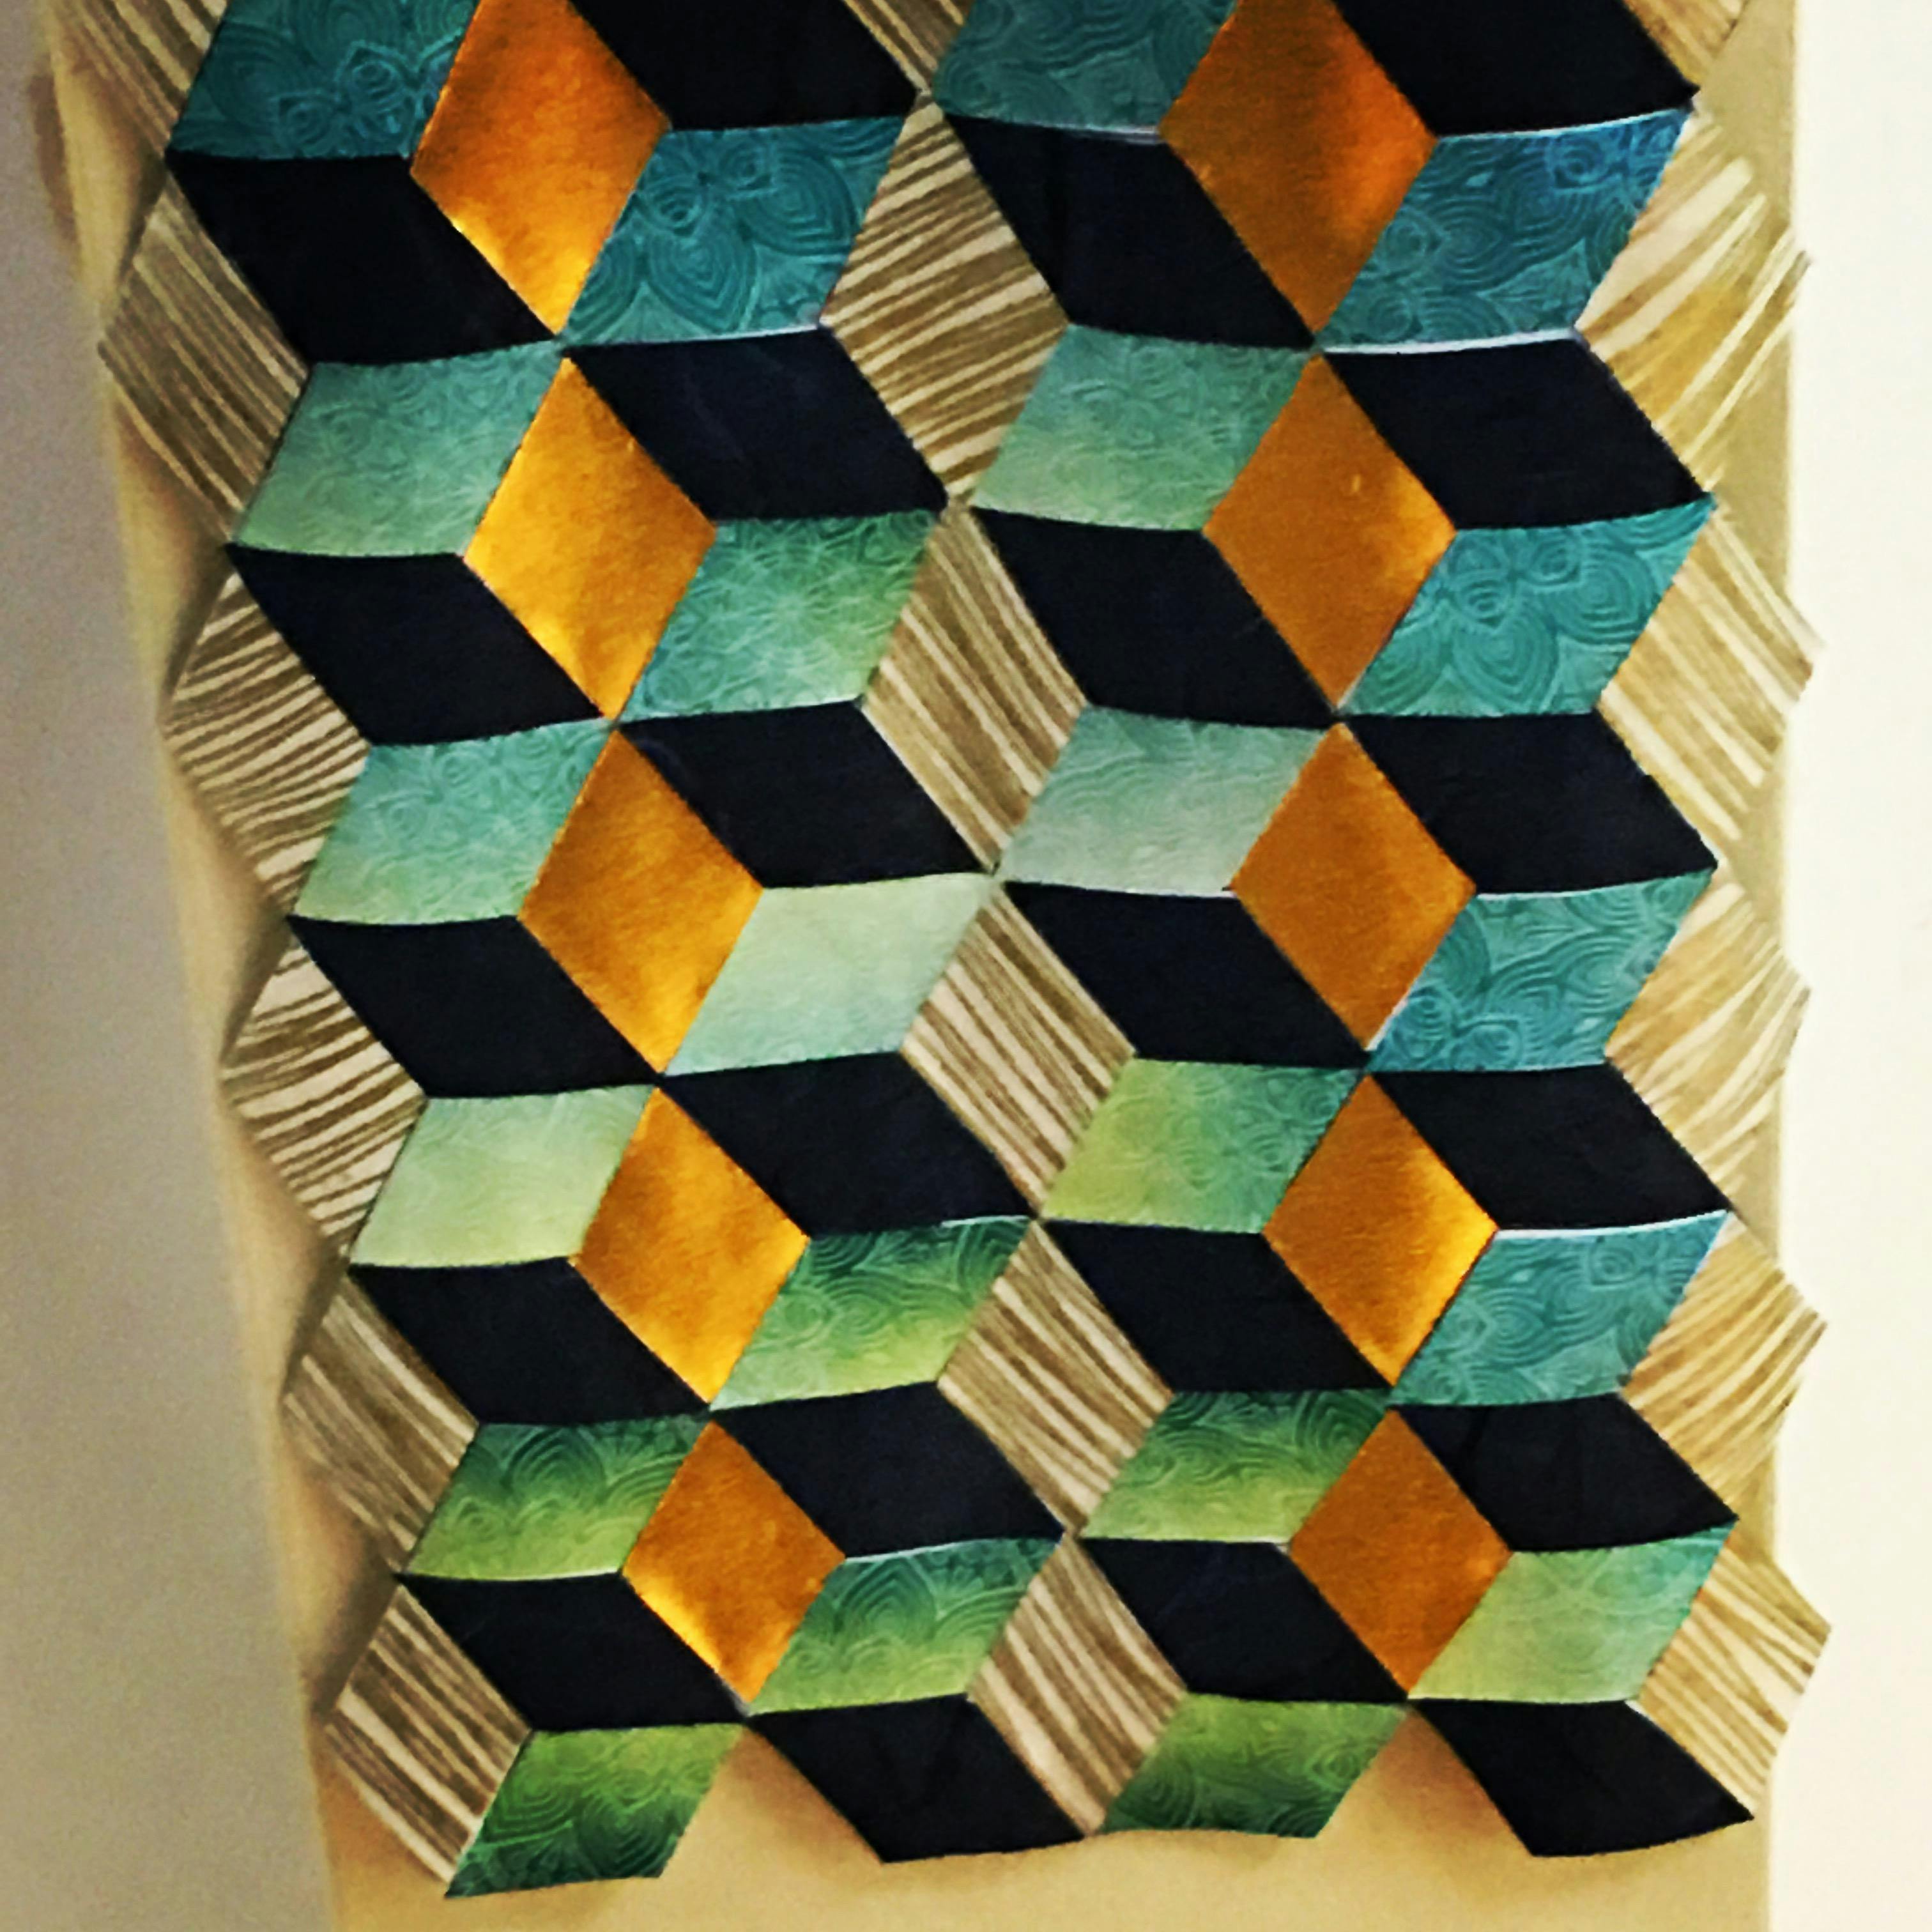 Zen Practice - Origami Wallpaper Community Project